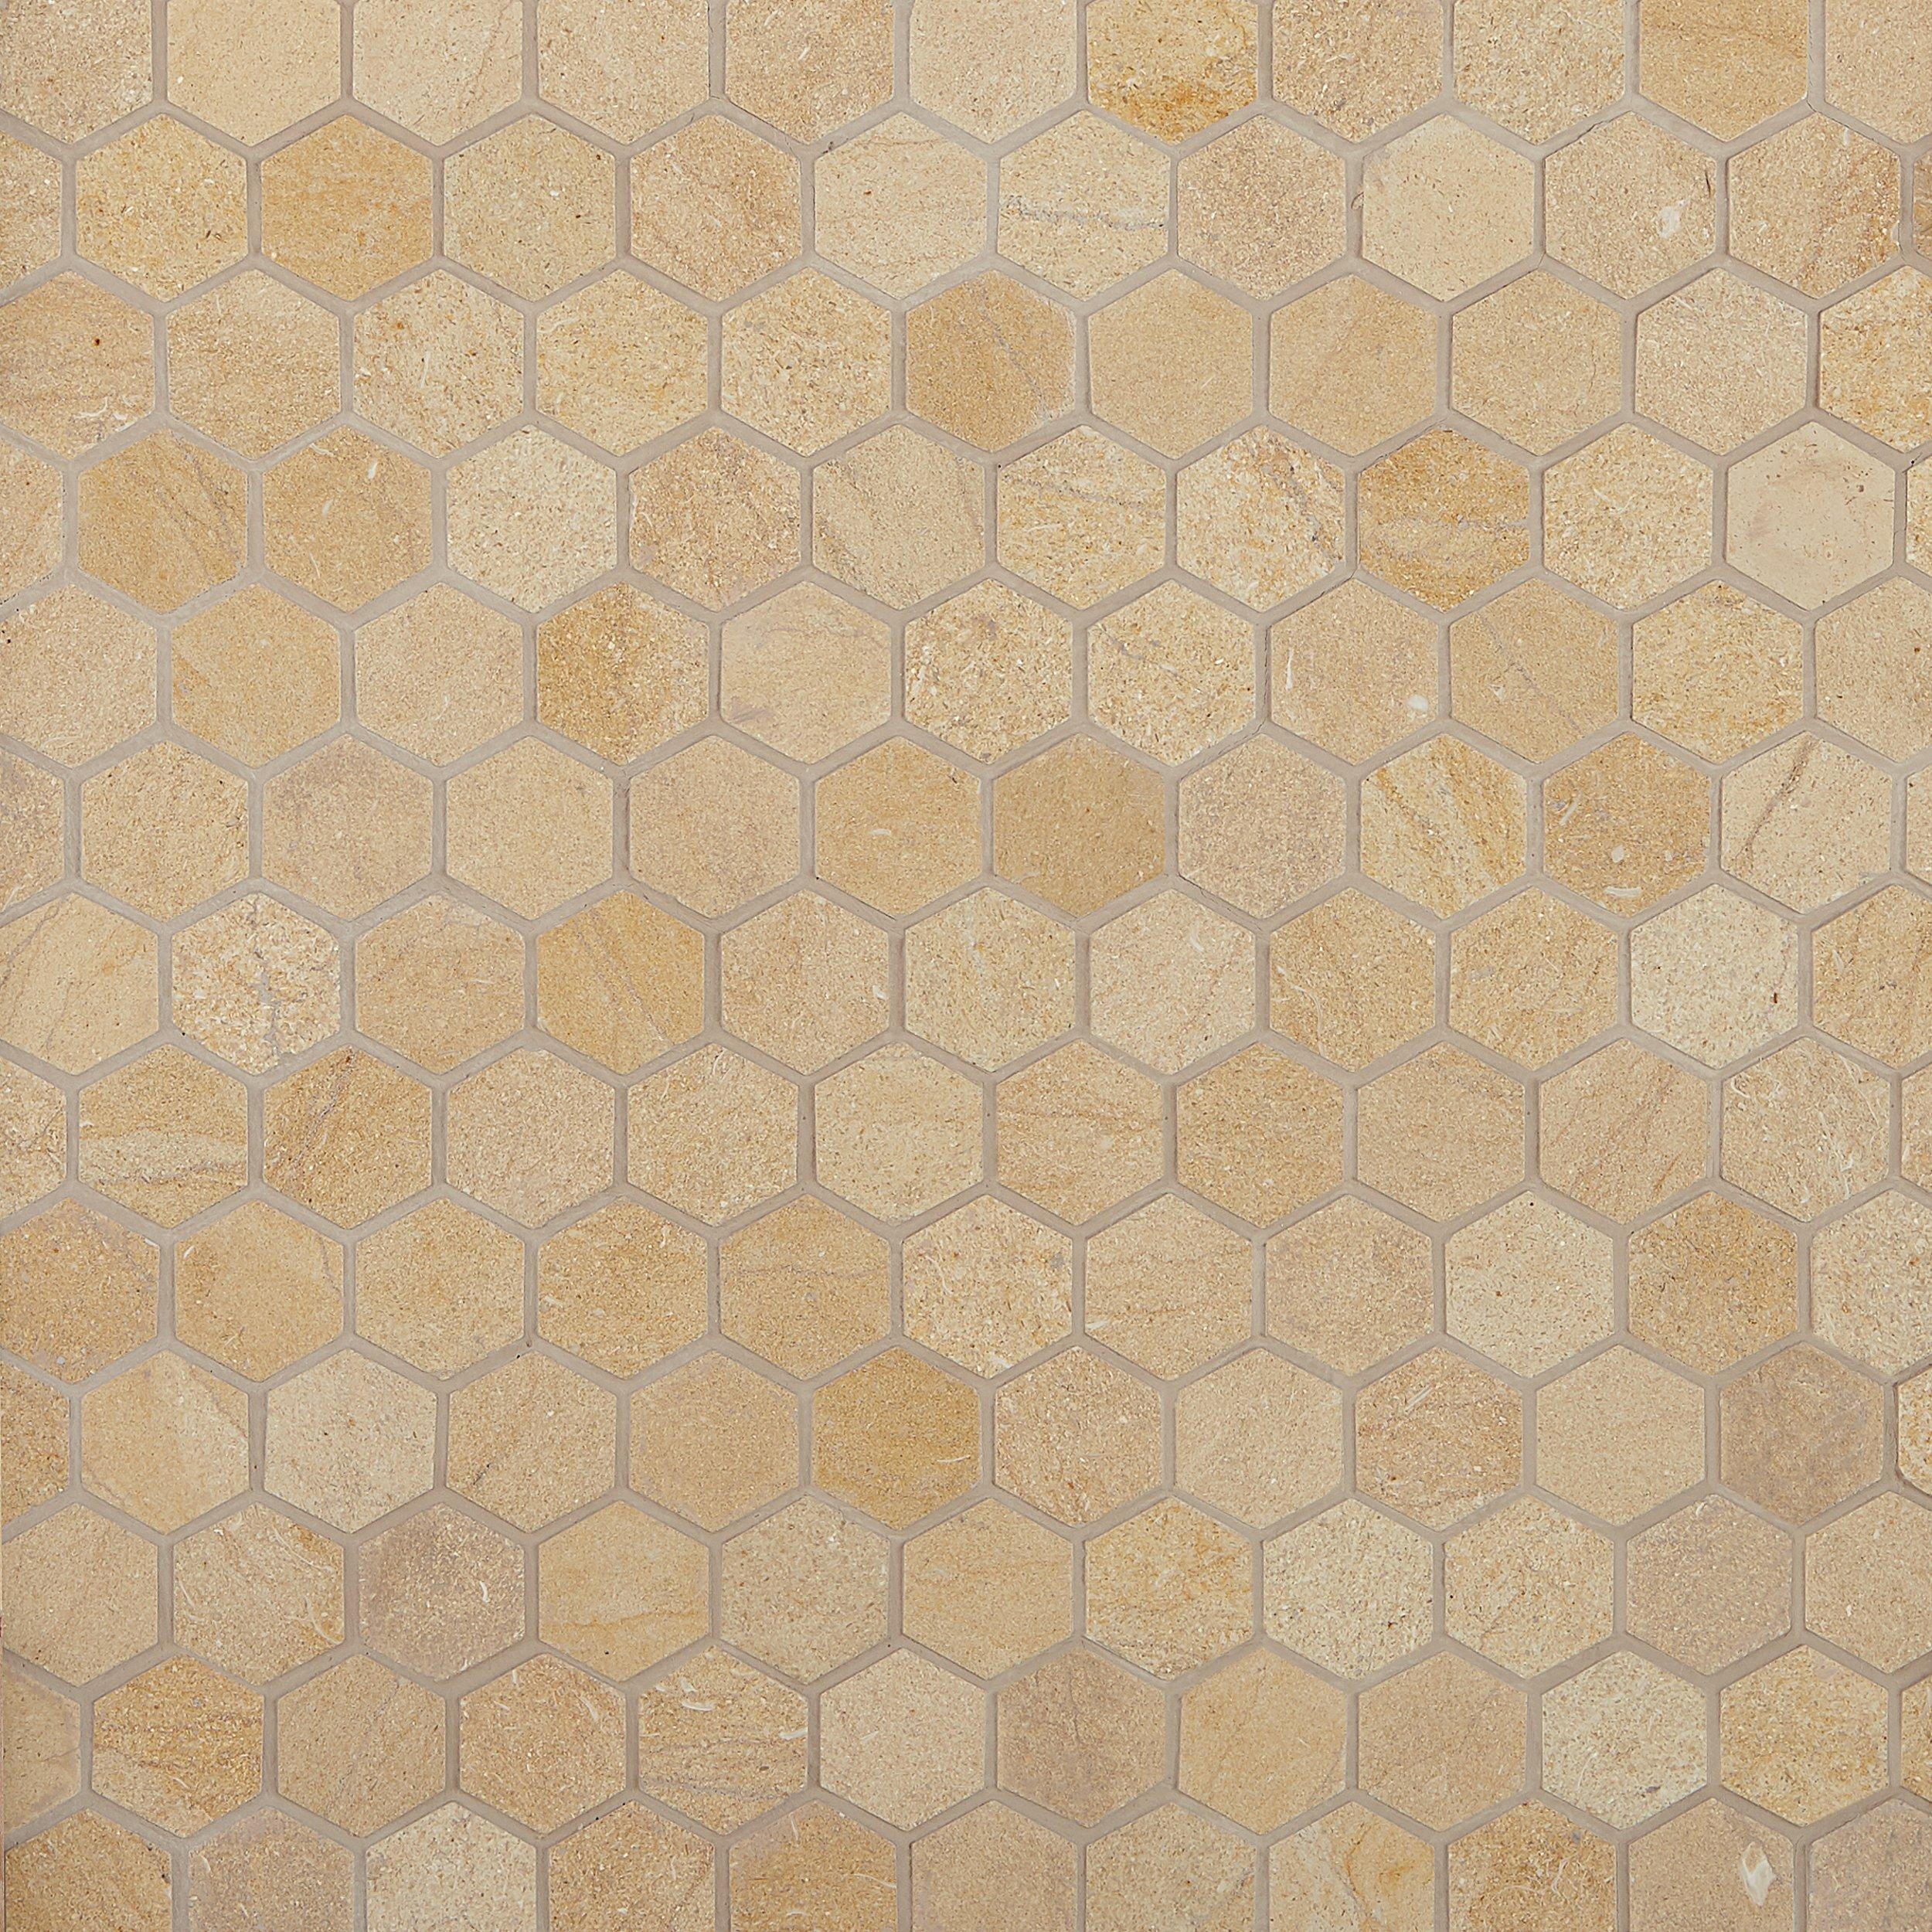 Jerusalem Gold Hexagon Limestone Mosaic 12 X 12 100301779